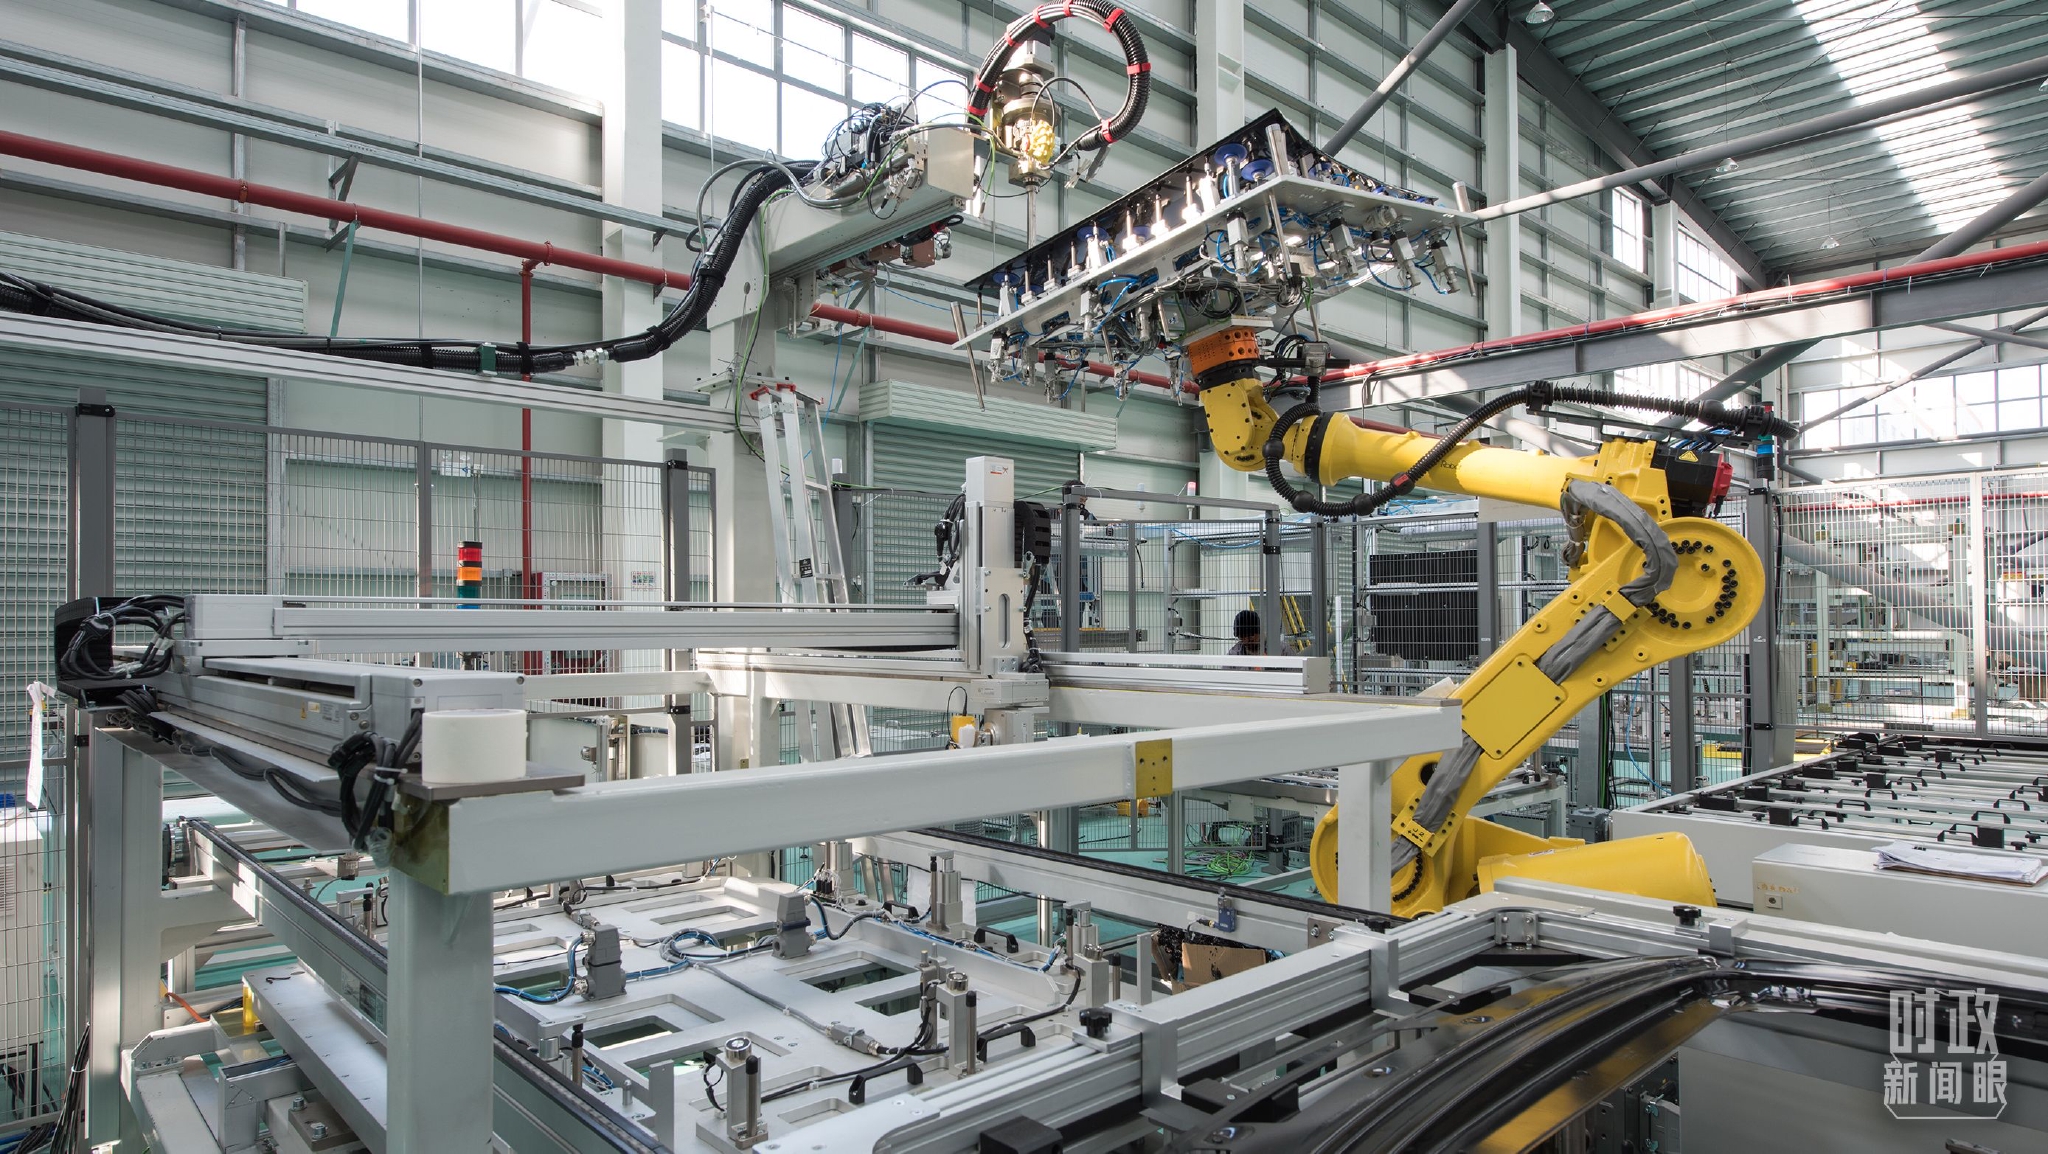 △上海的现代工业4.0工业机器人手臂胶机生产线。（图/视觉中国）